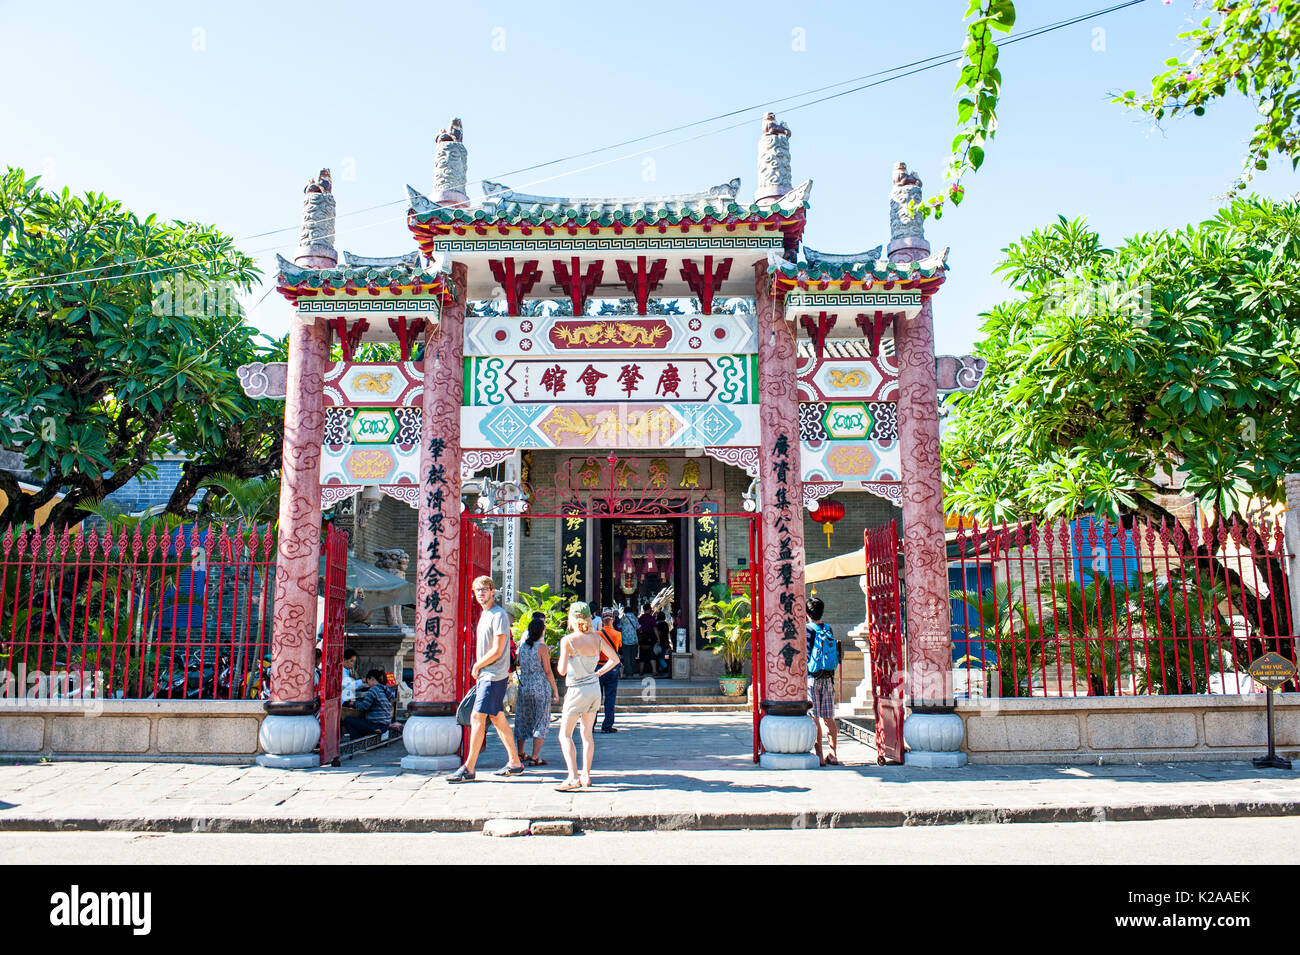 Cantonese Assembly Hall, Hoi Quan Quang Trieu, Hoi An Ancient Town, Vietnam Stock Photo